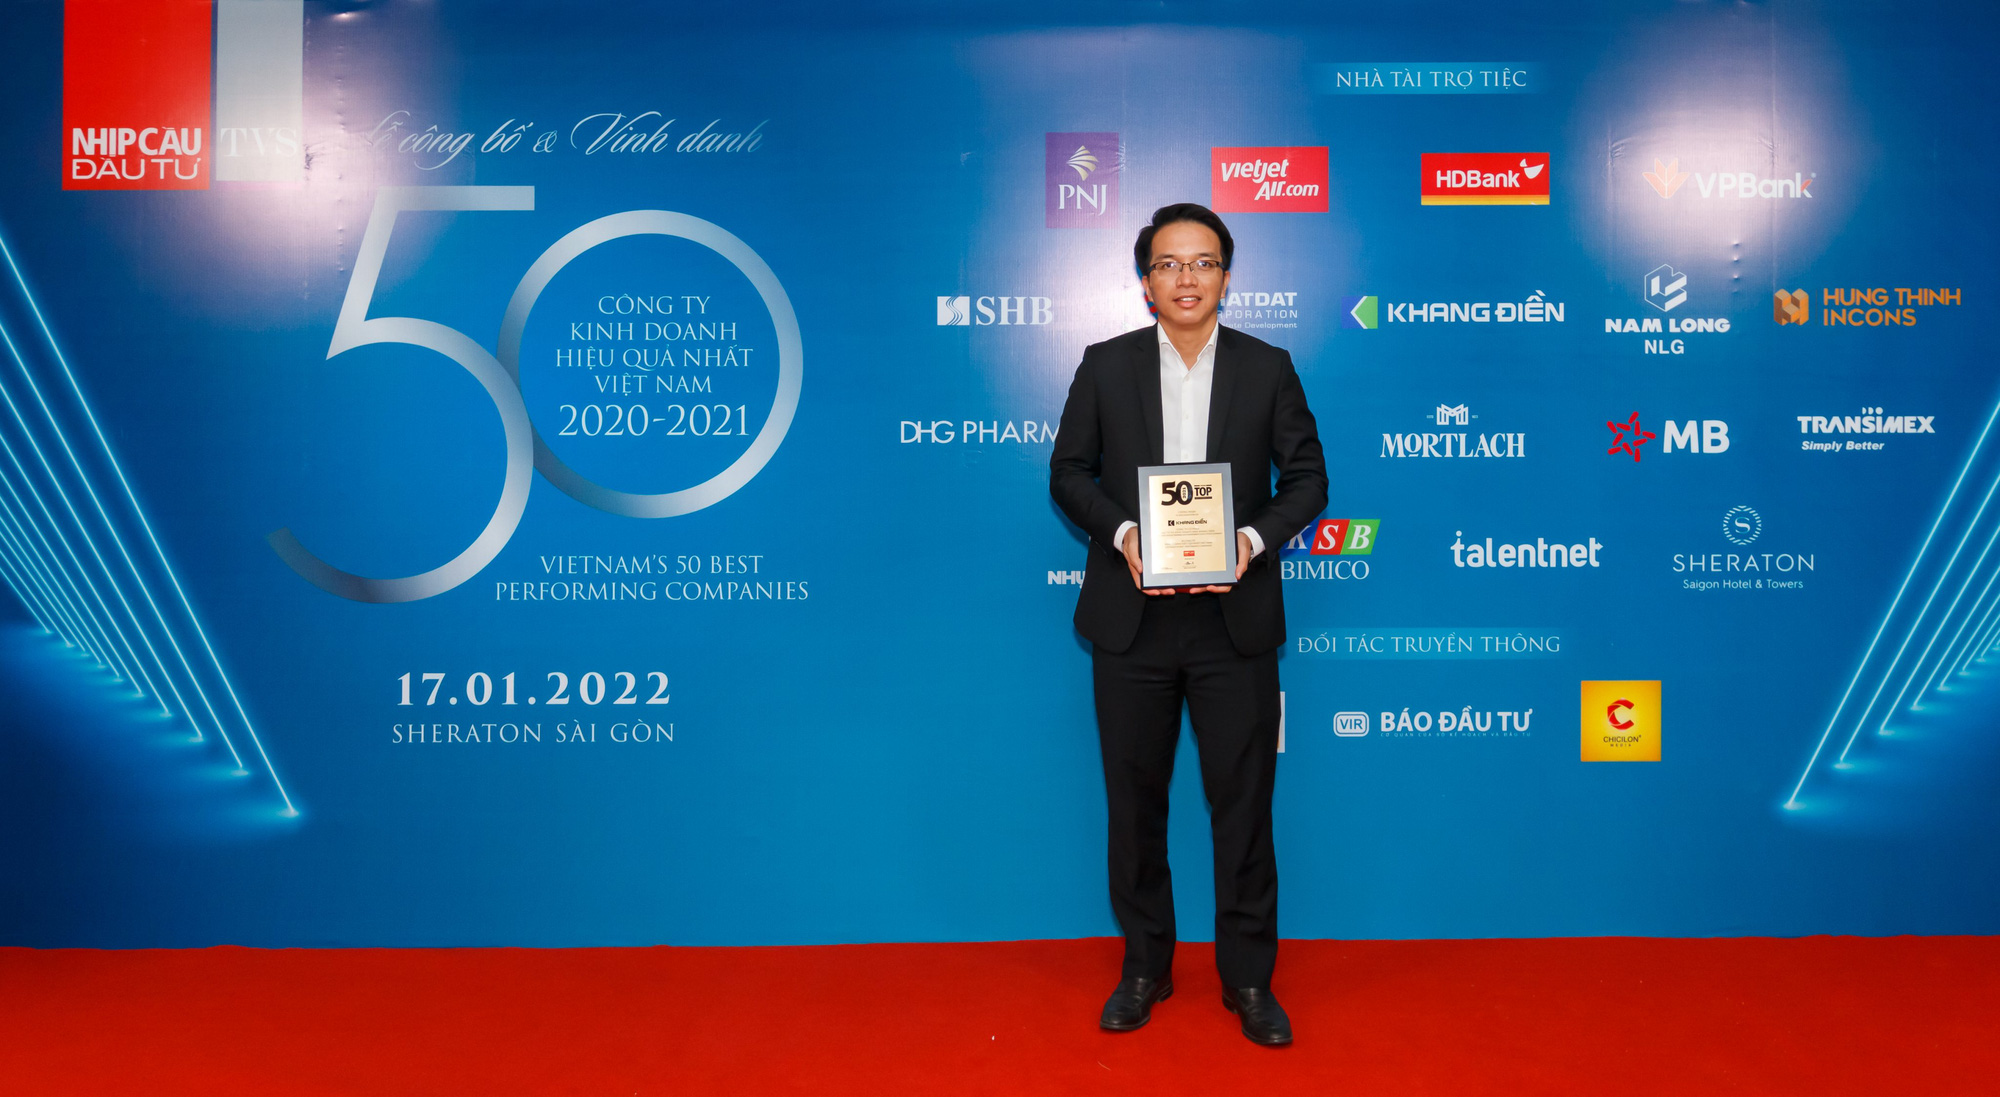 Khang Điền đạt Top 50 công ty kinh doanh hiệu quả nhất Việt Nam 2020 - 2021 - Ảnh 2.